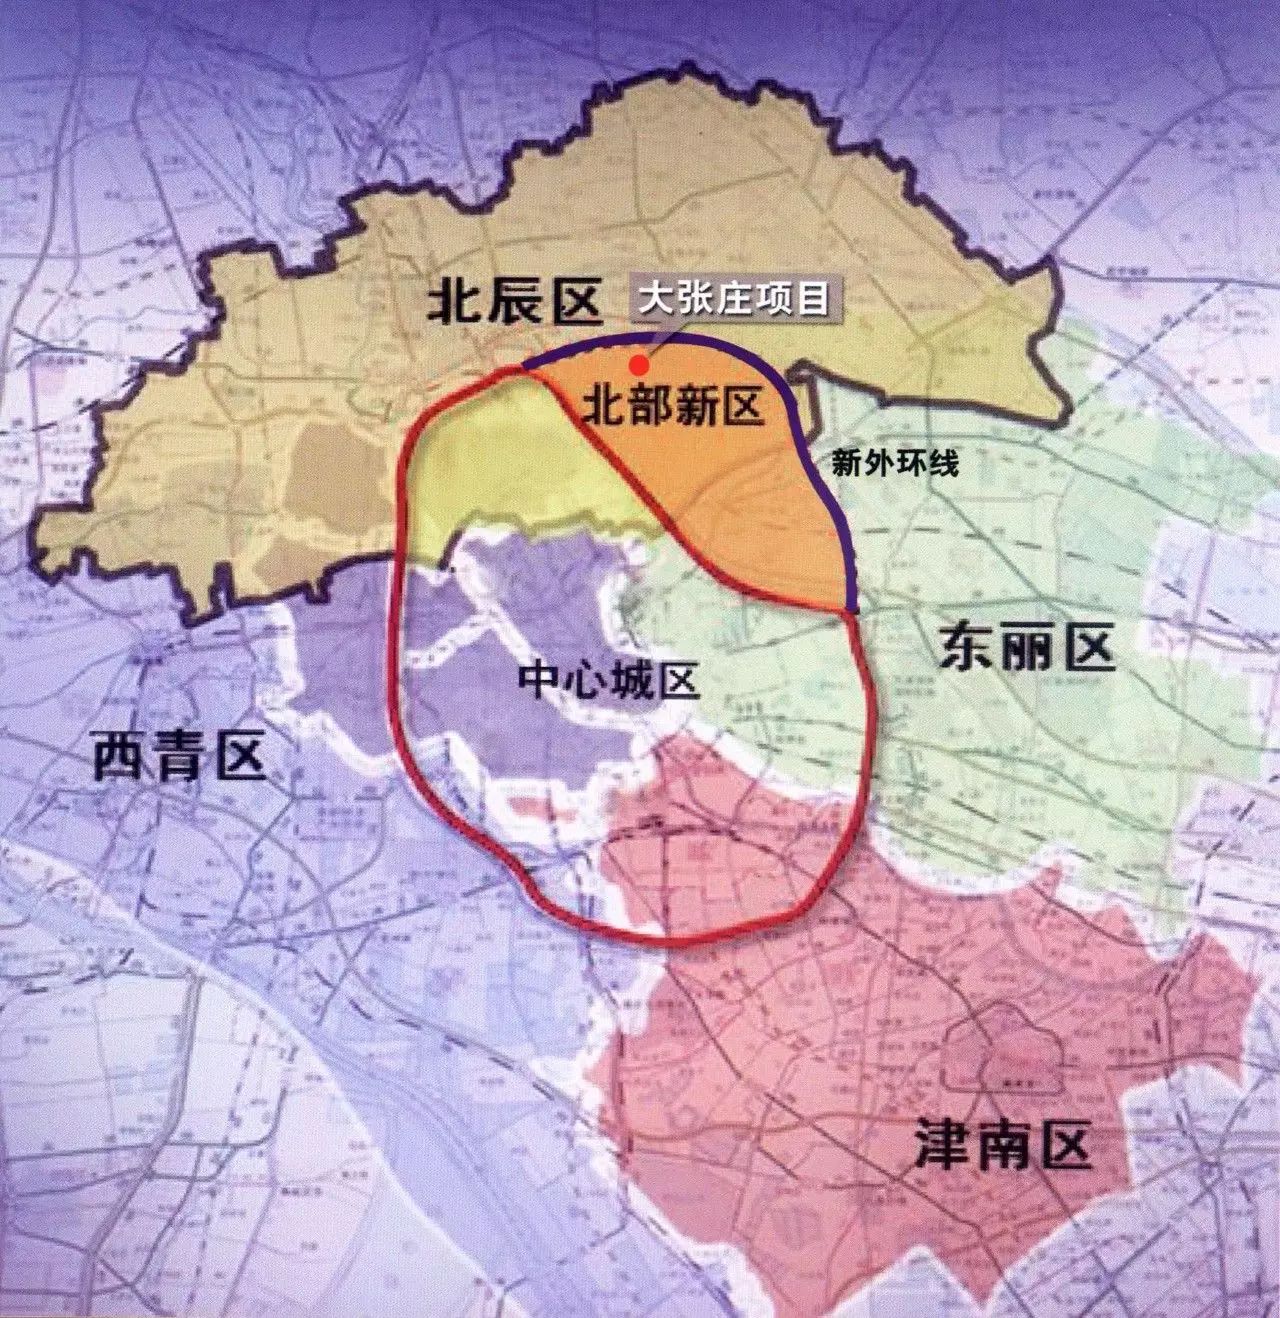 鸭梨变土豆 全新板块即将崛起 大张庄镇,位于天津市北辰区东北部,东